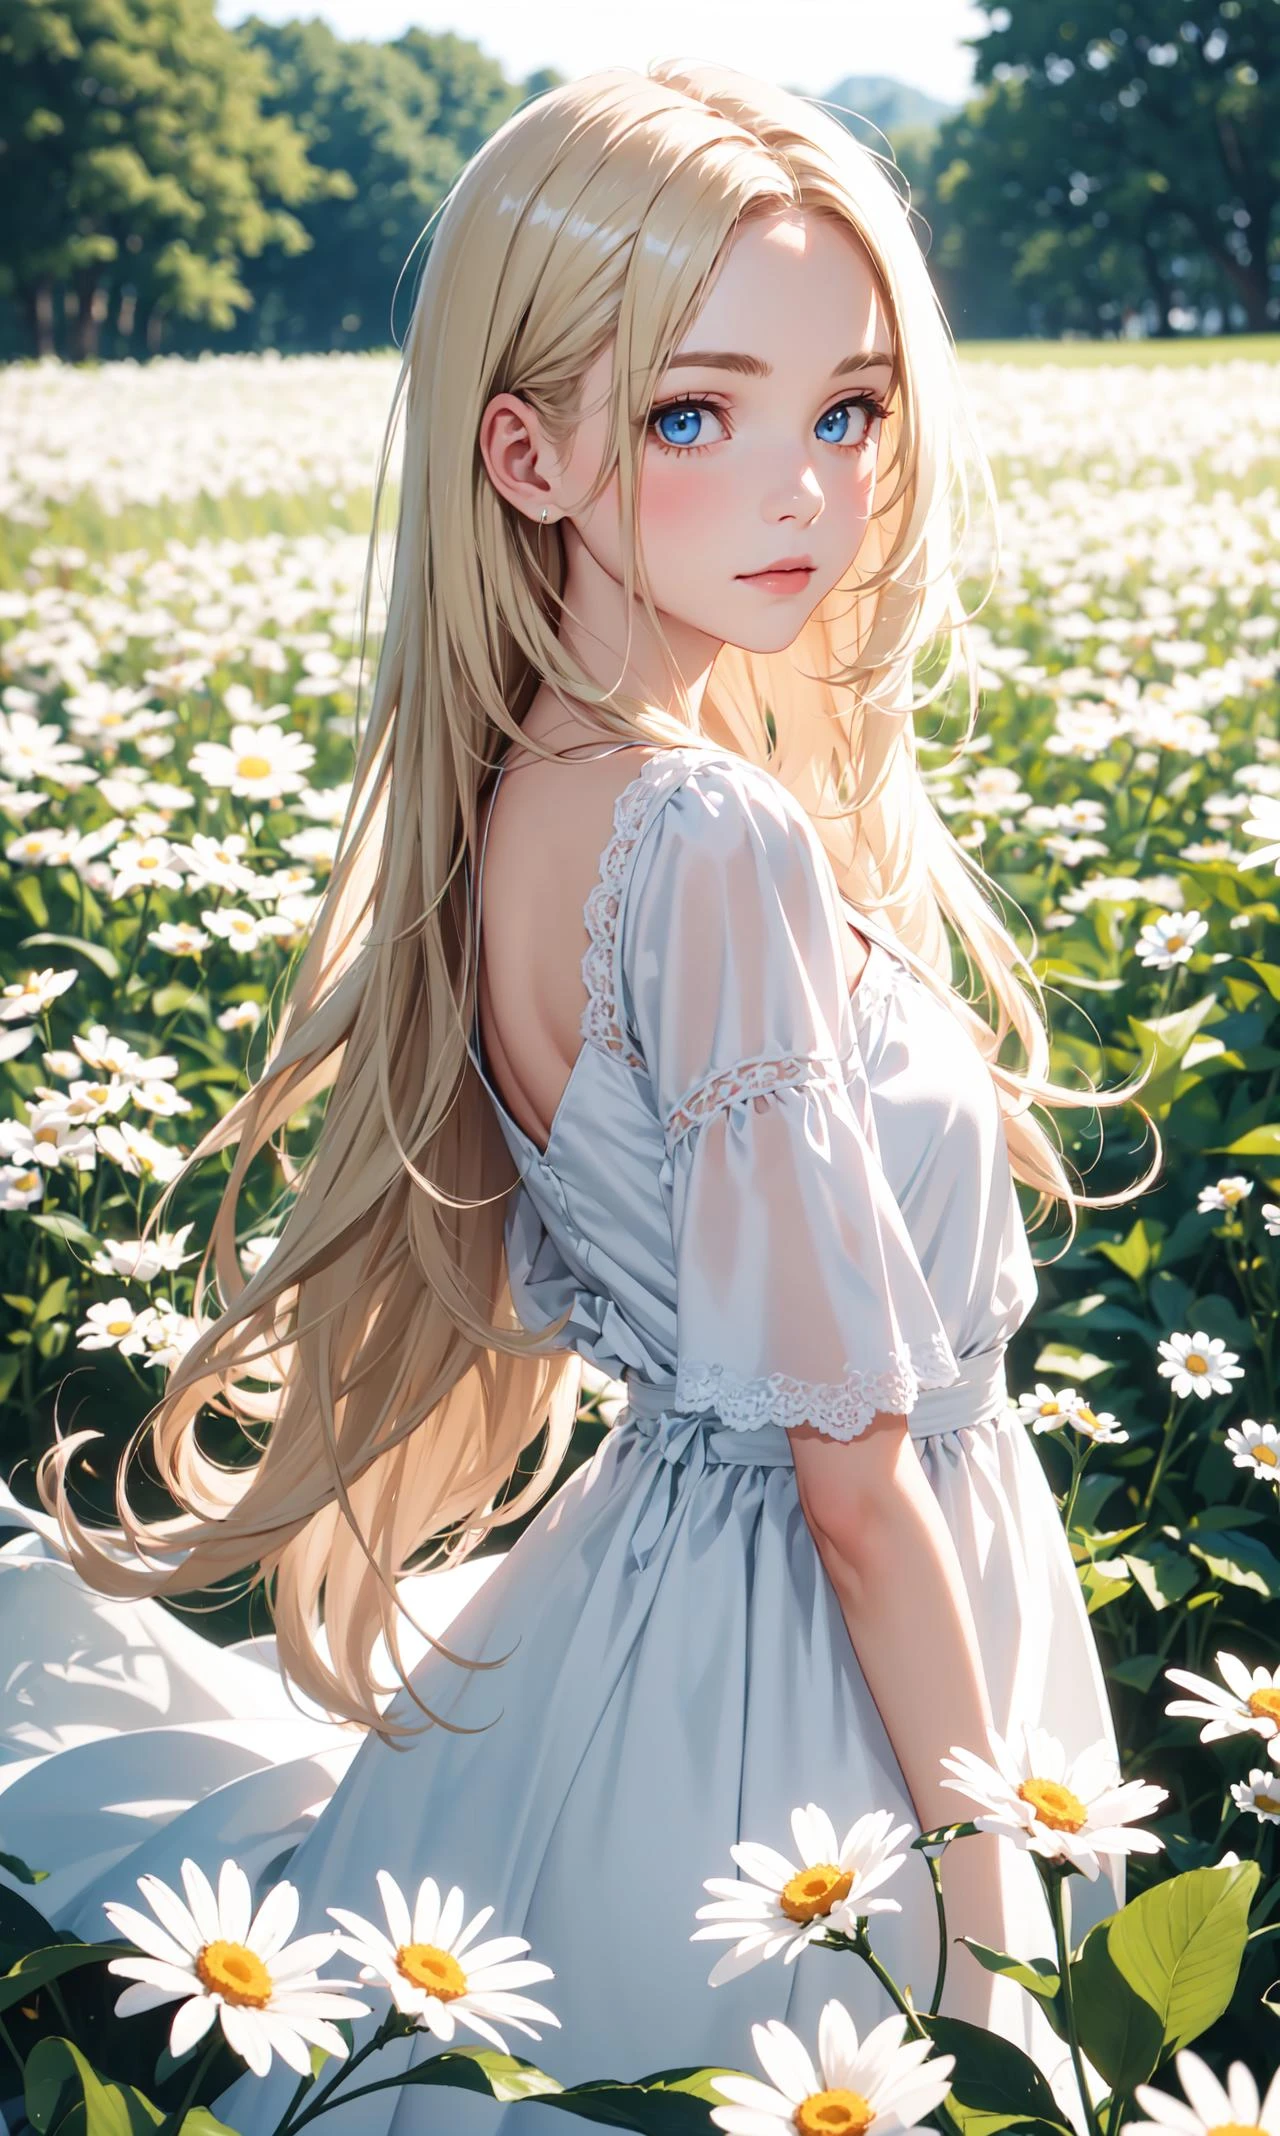 1fille,dans un champ de fleurs,fleur blanche,regarder le spectateur,yeux bleus,cheveux blond,Marguerite,cheveux longs,Robe blanche pure,